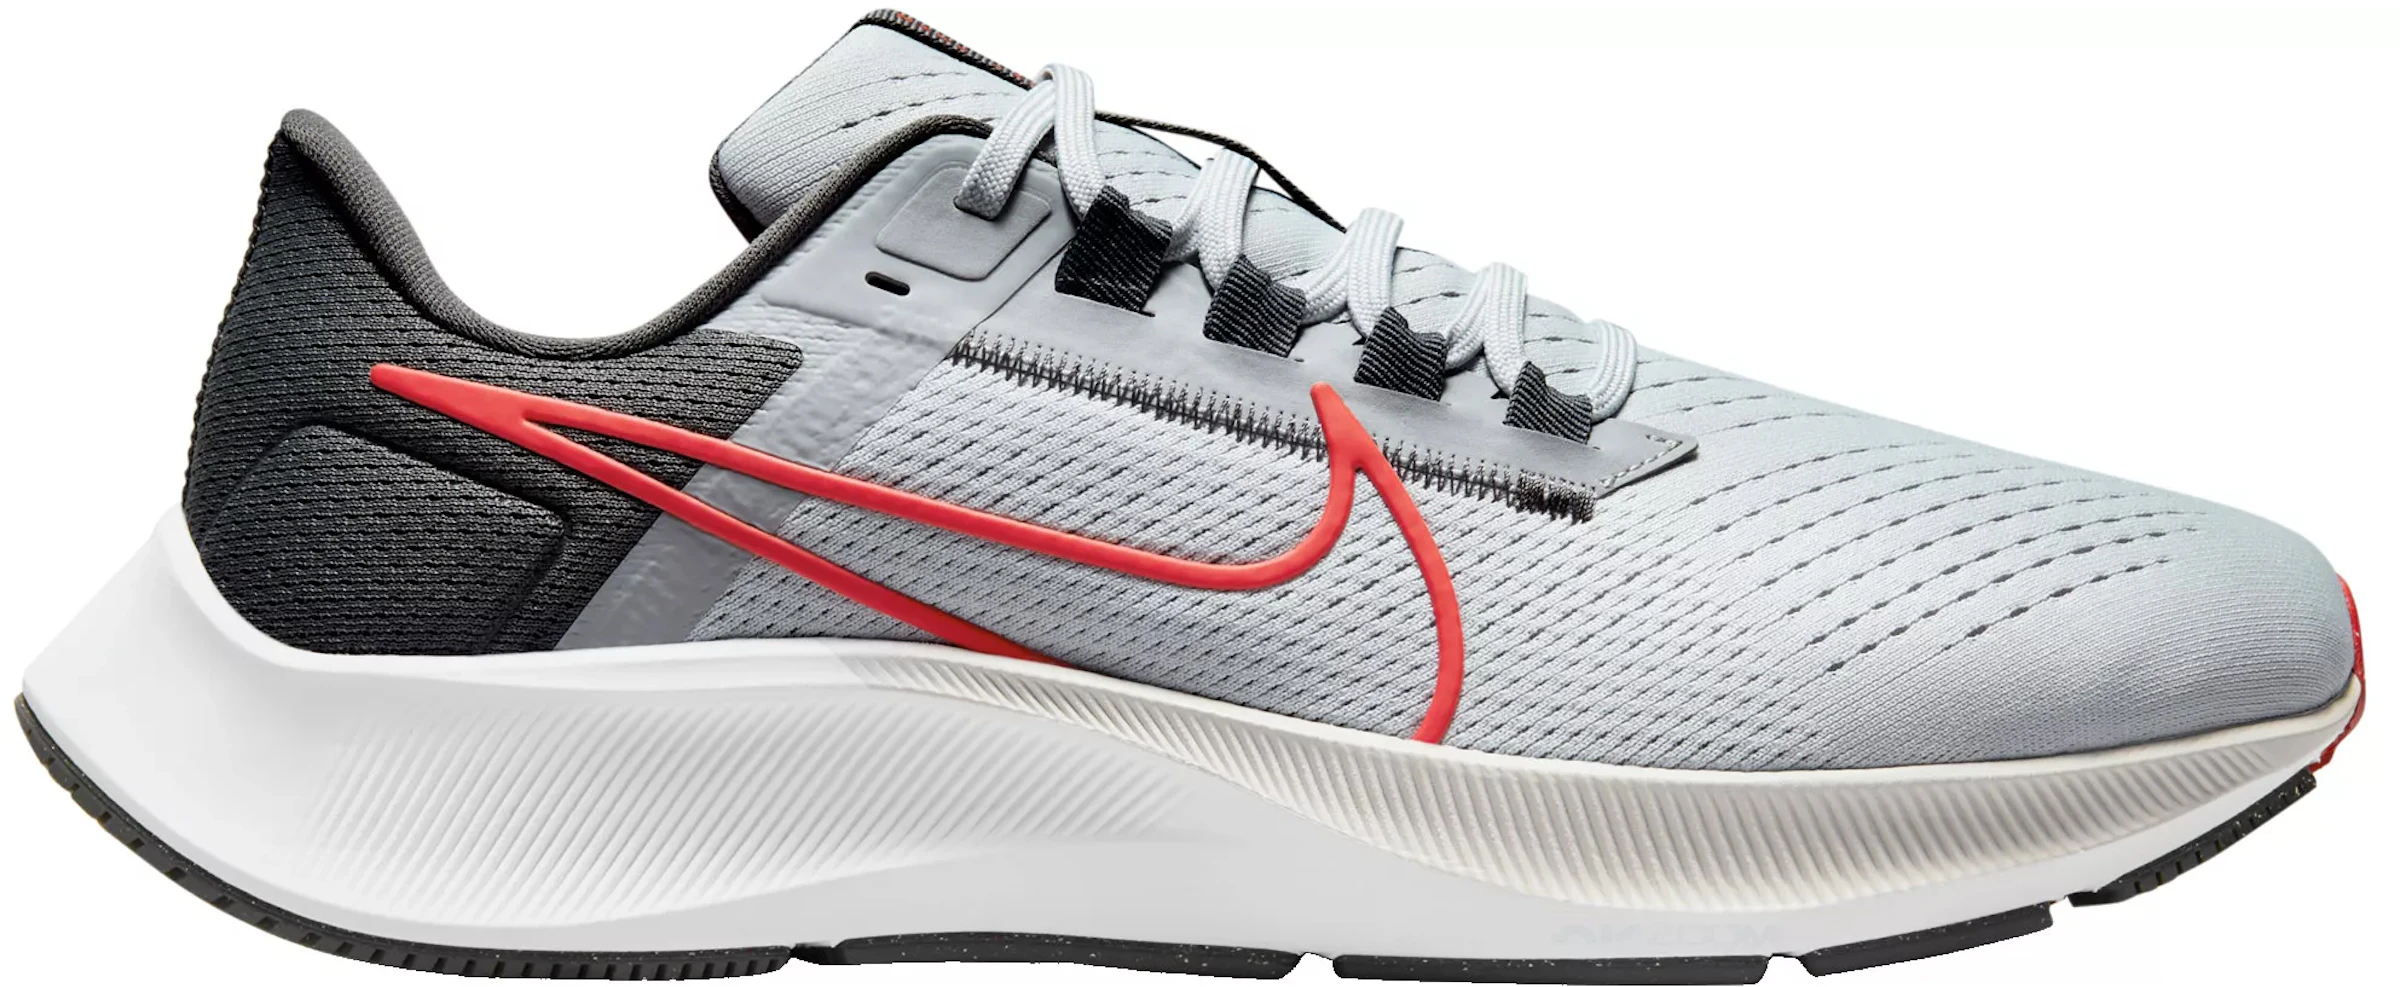 Delgado pedir disculpas cantidad de ventas Nike Air Zoom Pegasus 38 Wolf Grey Chile Red - CW7356-004 - ES